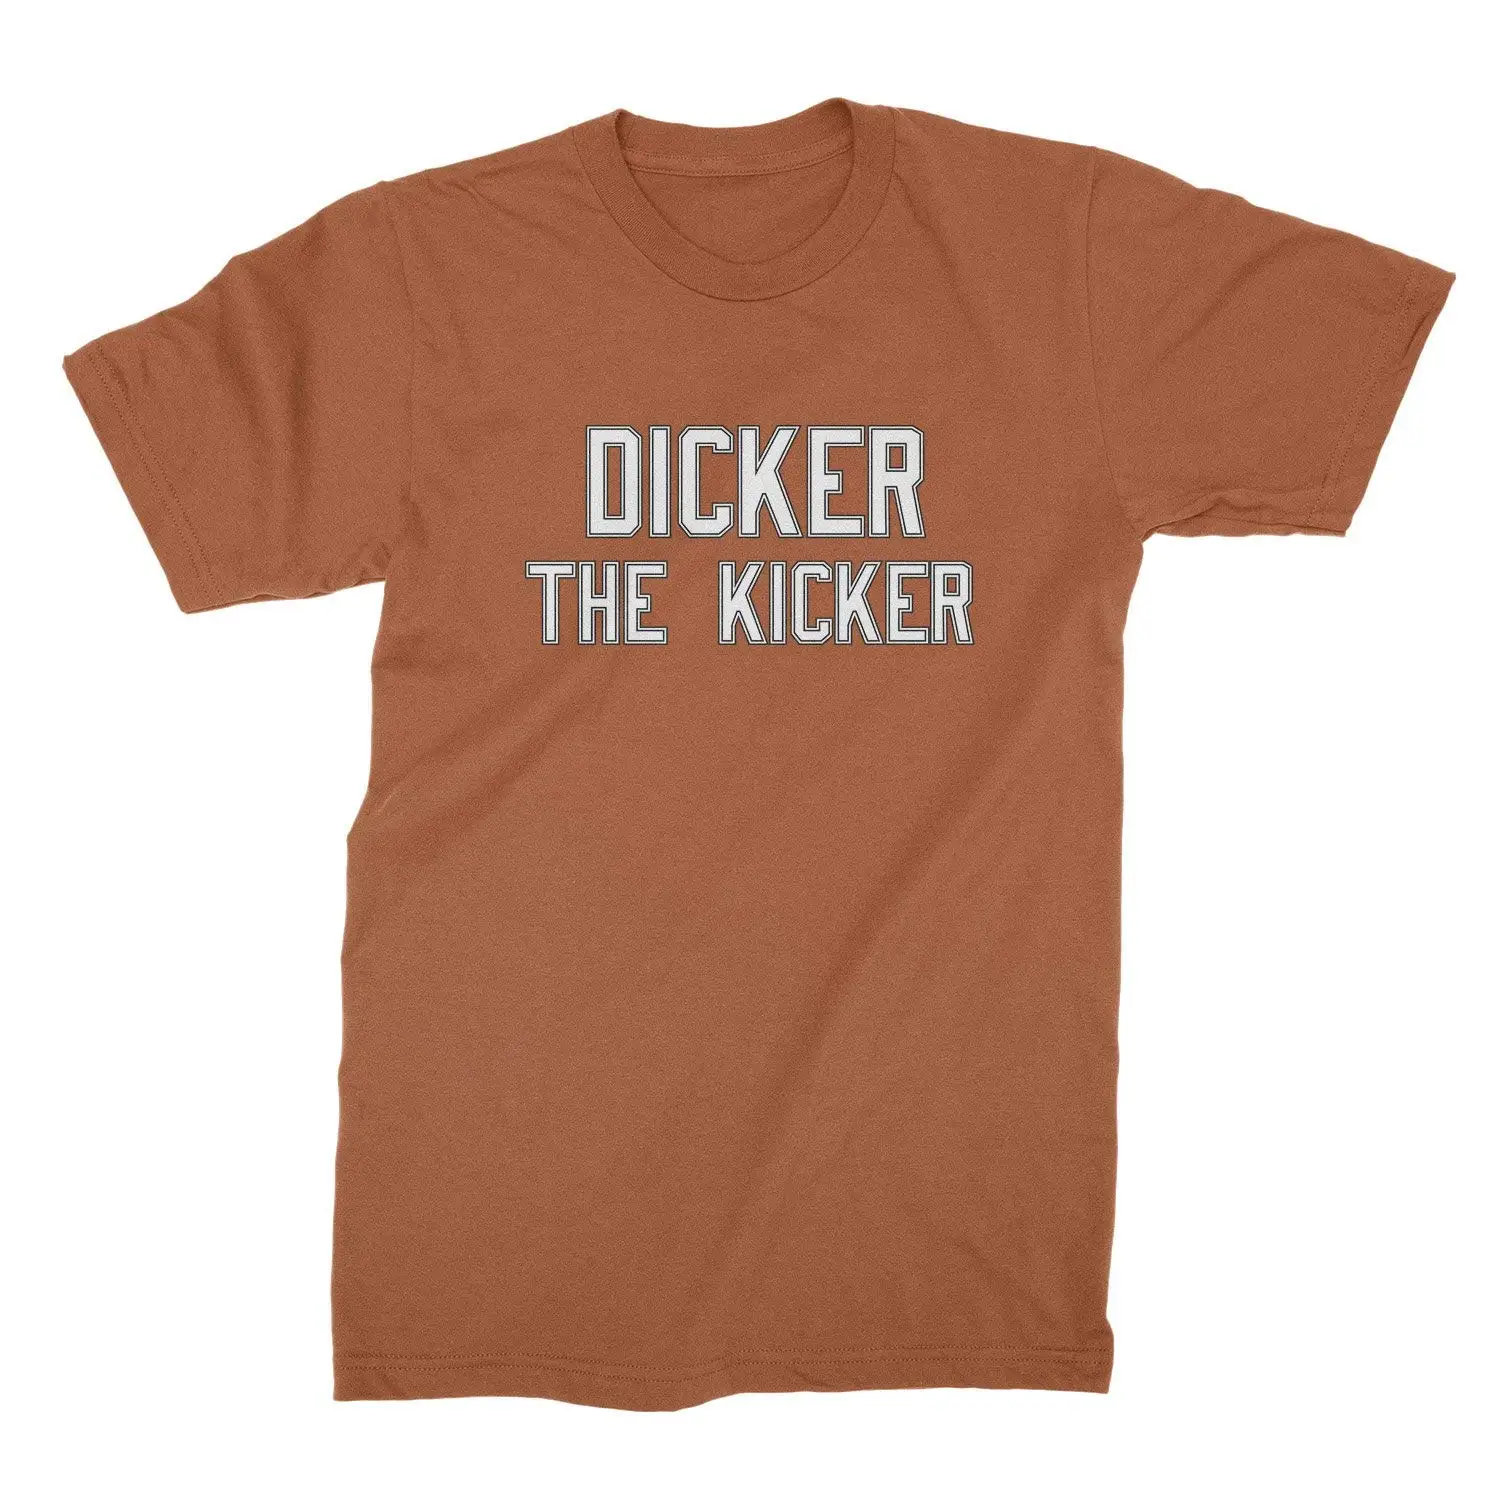 Dicker the kicker story